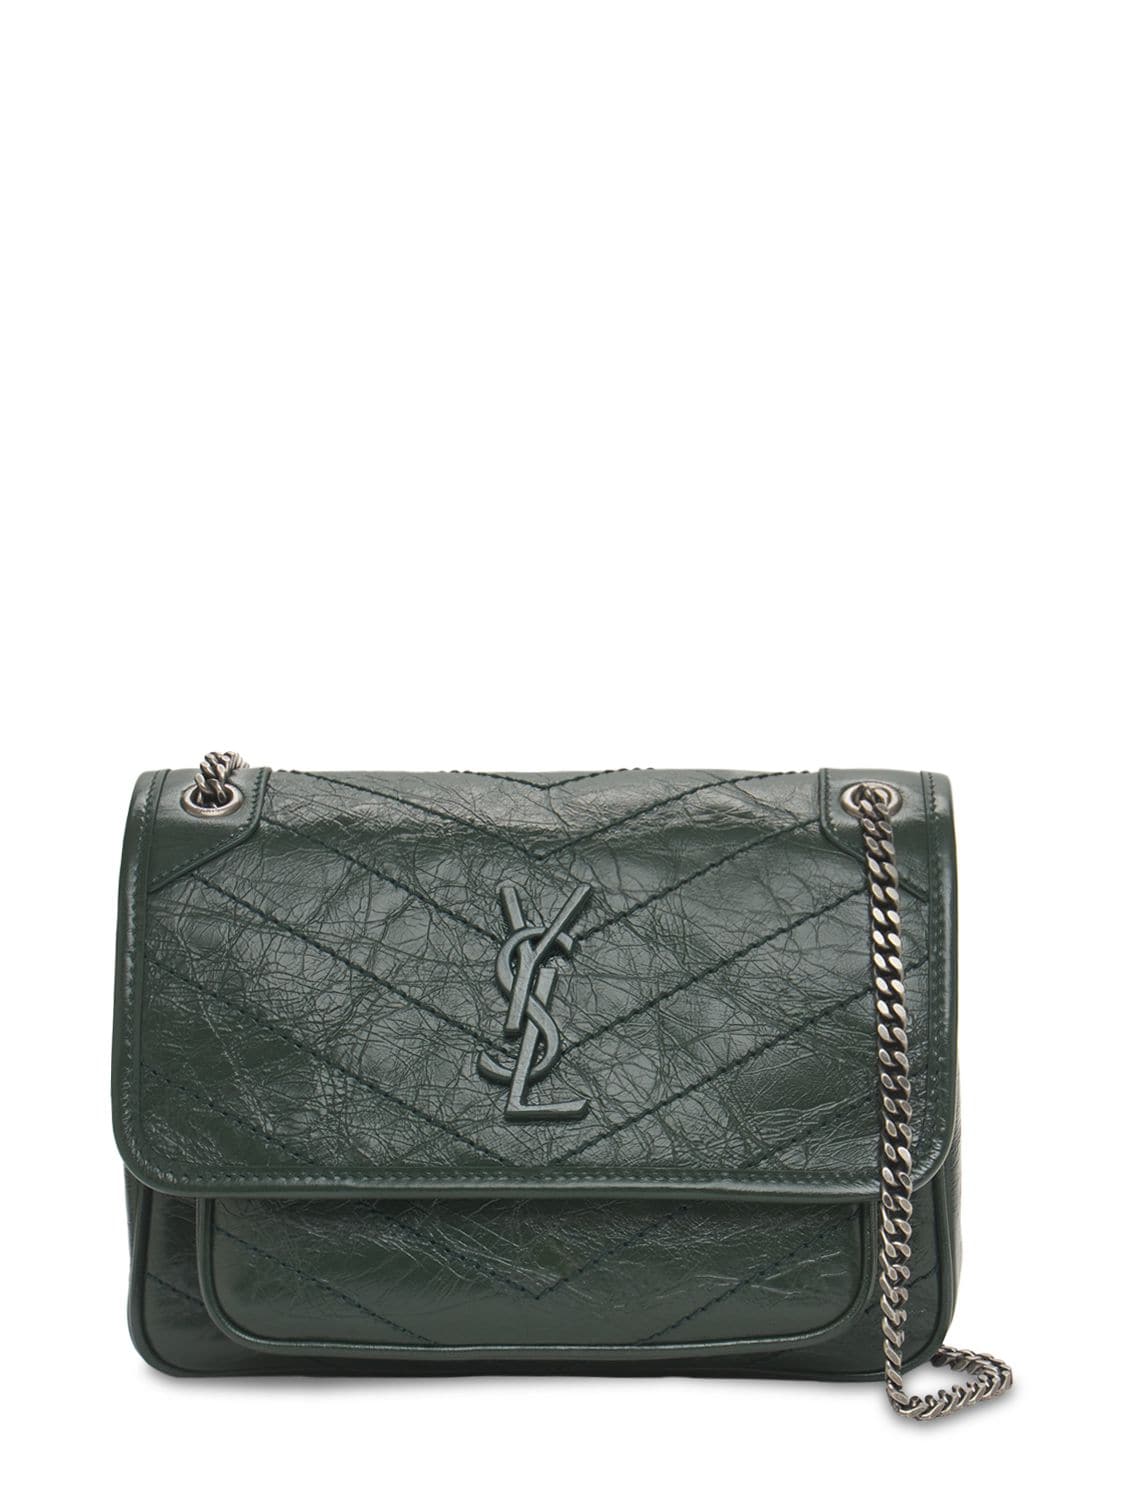 Saint Laurent Niki Monogram Crinkled Leather Bag In New Vert